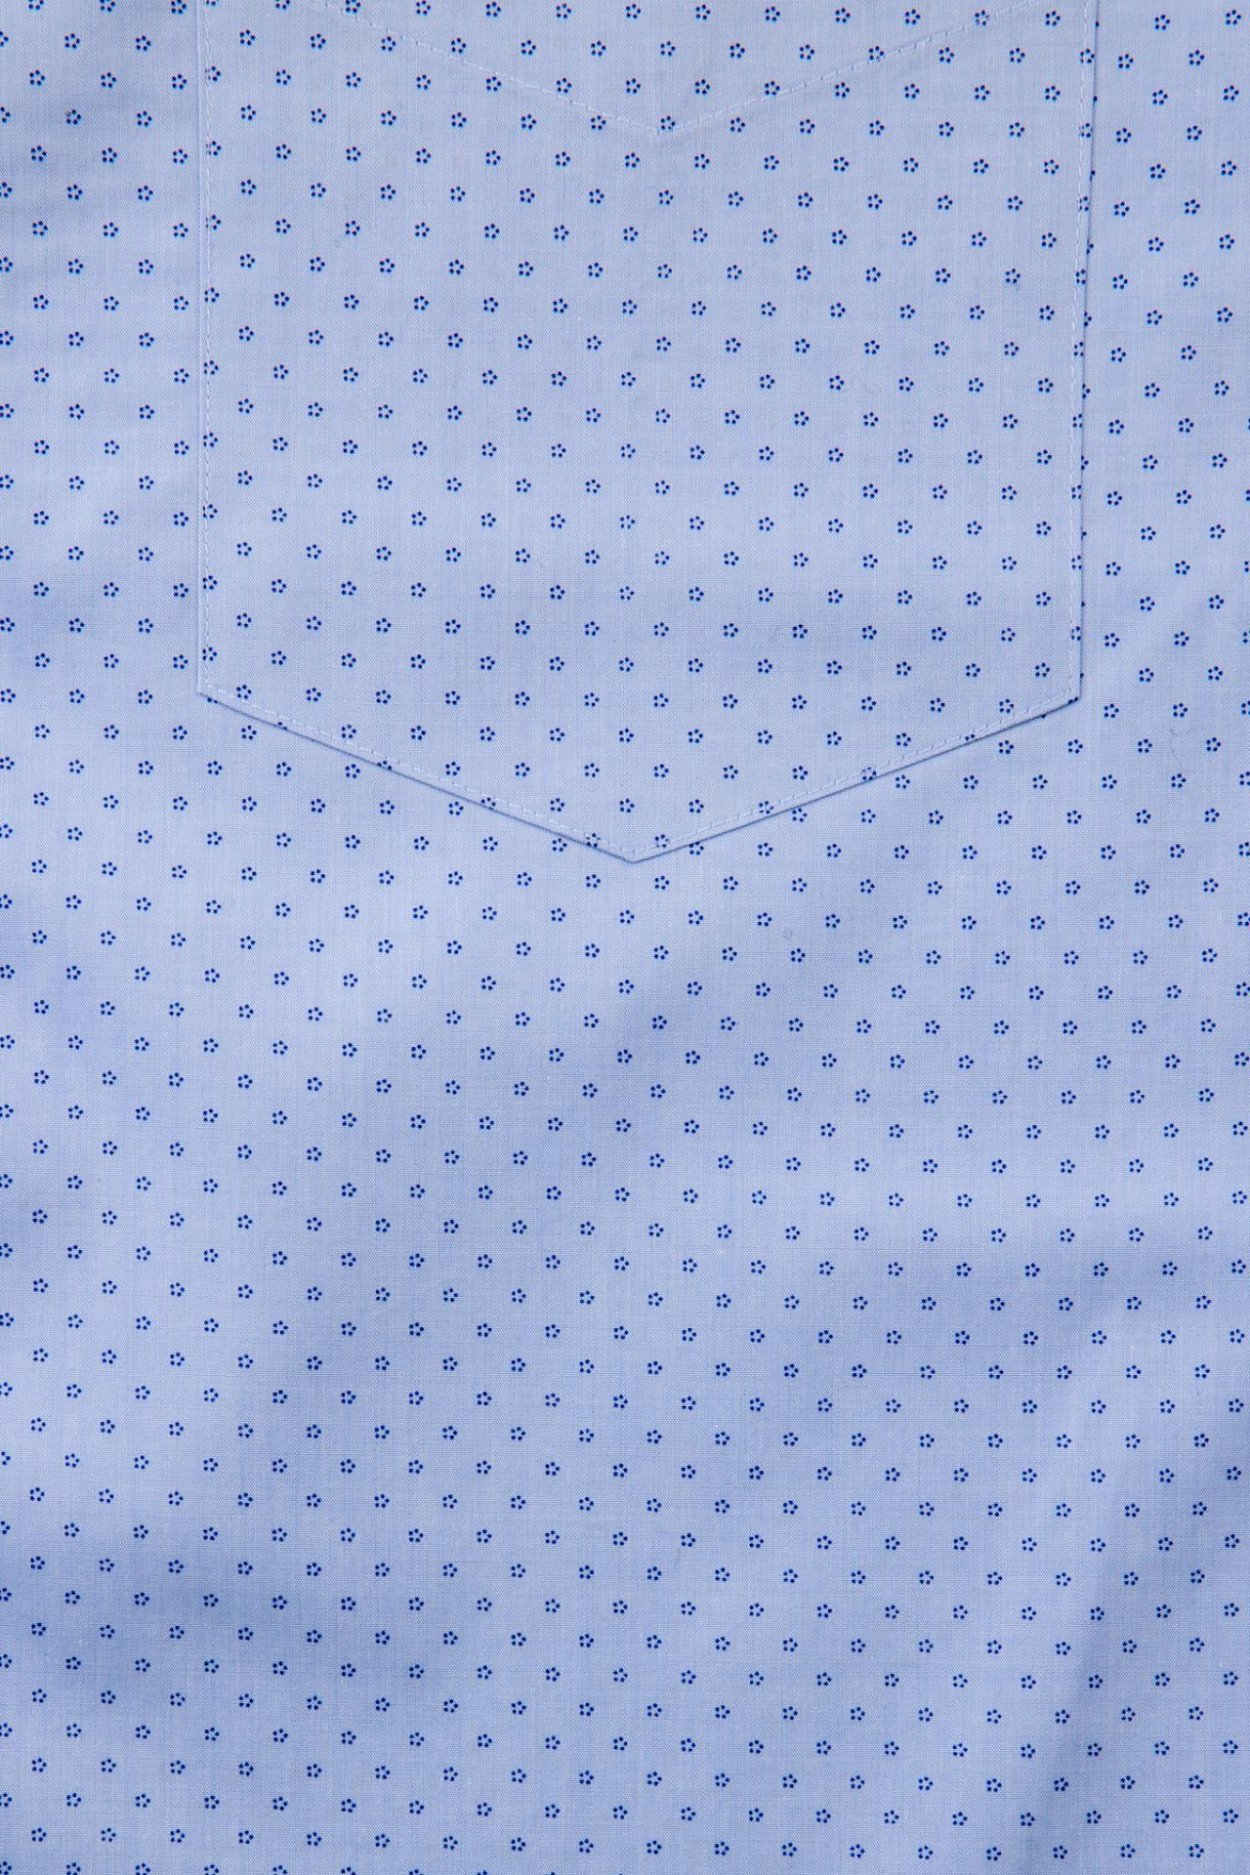 Pánská tmavě modrá košile s geometrickým vzorem